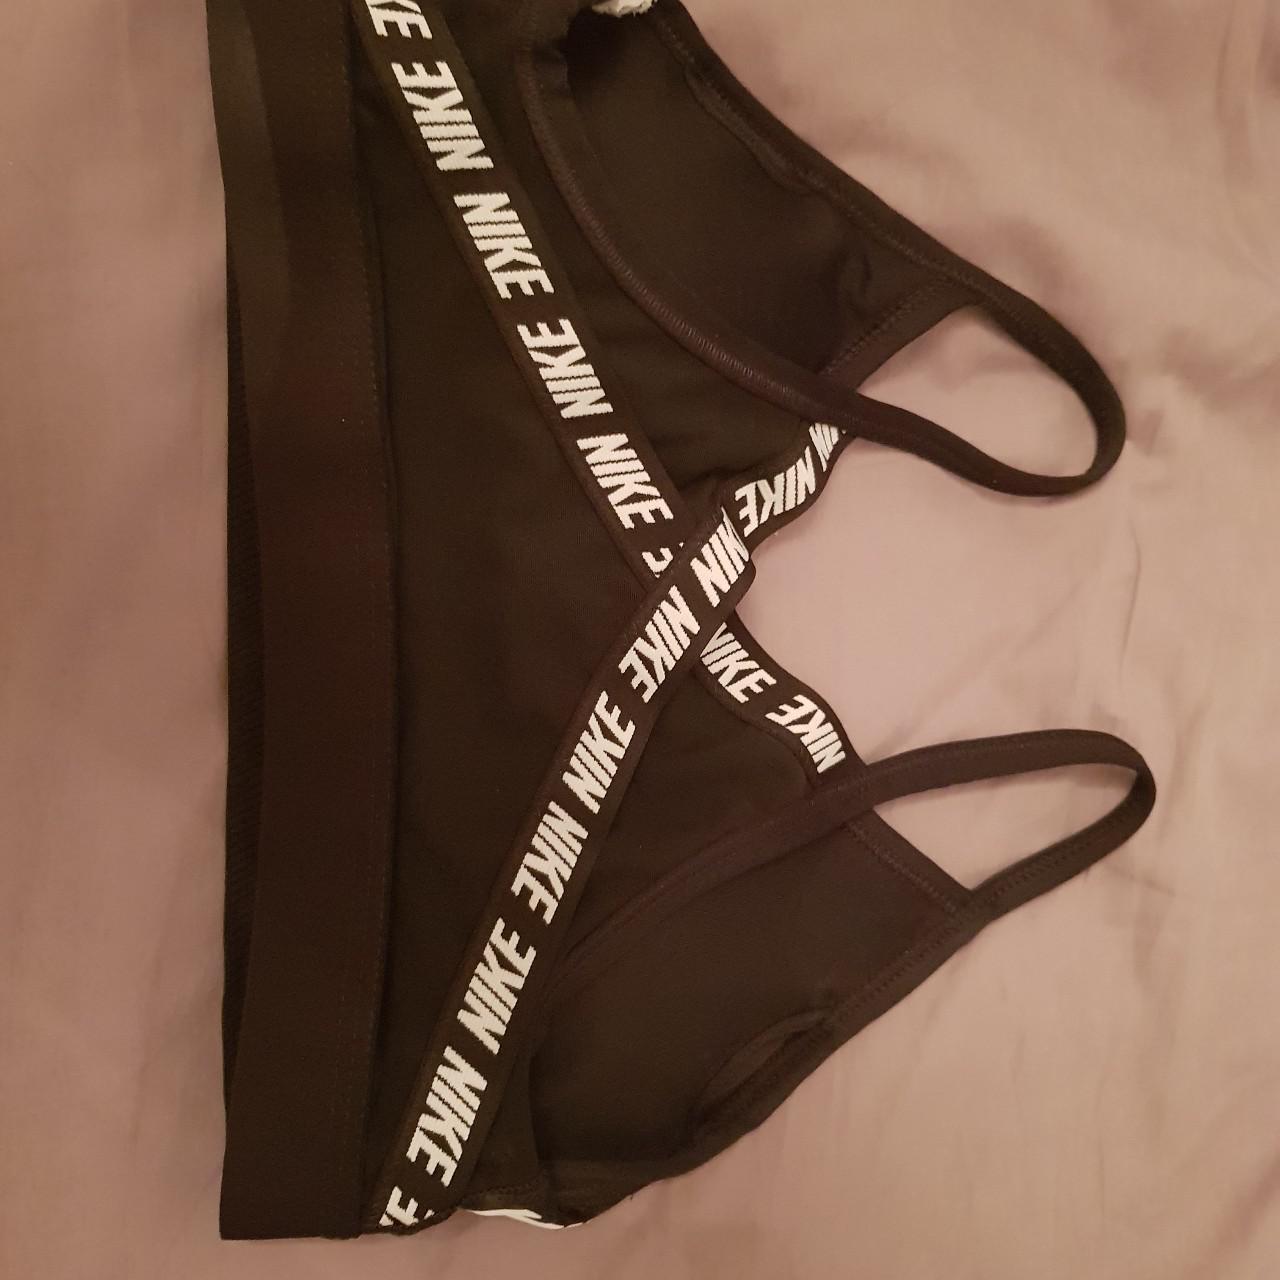 Product Image 2 - Nike sports bra, black, size